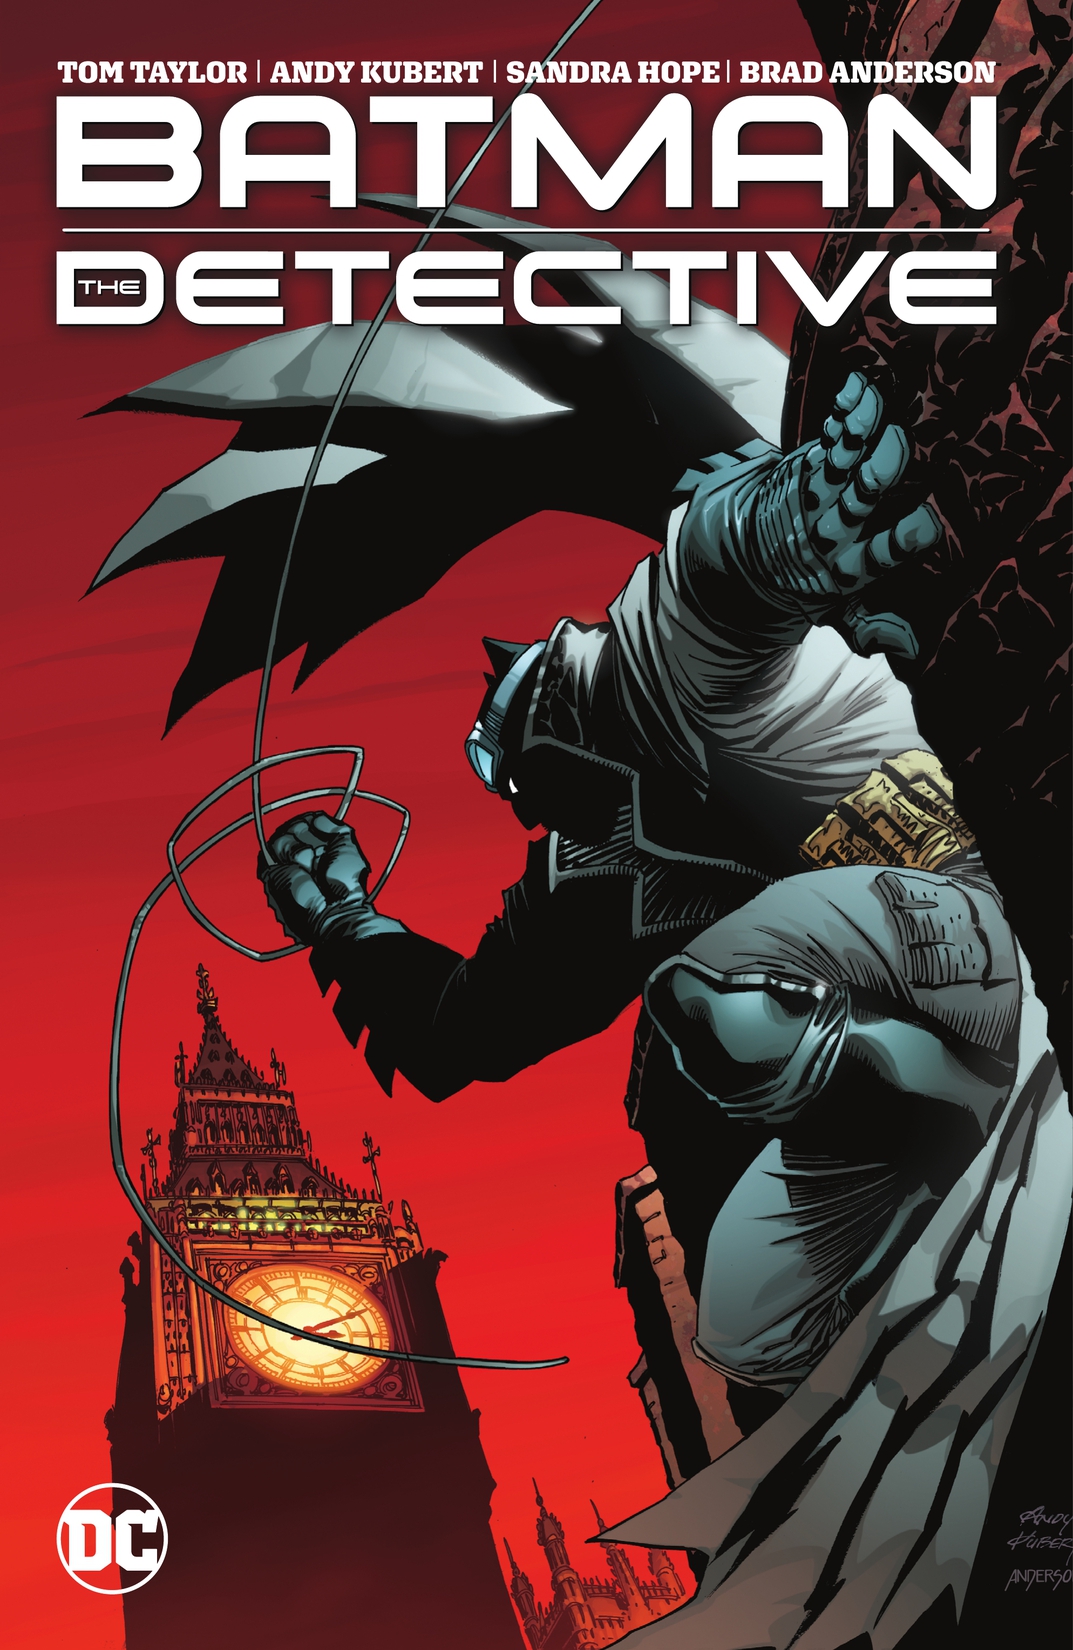 Batman: The Detective preview images